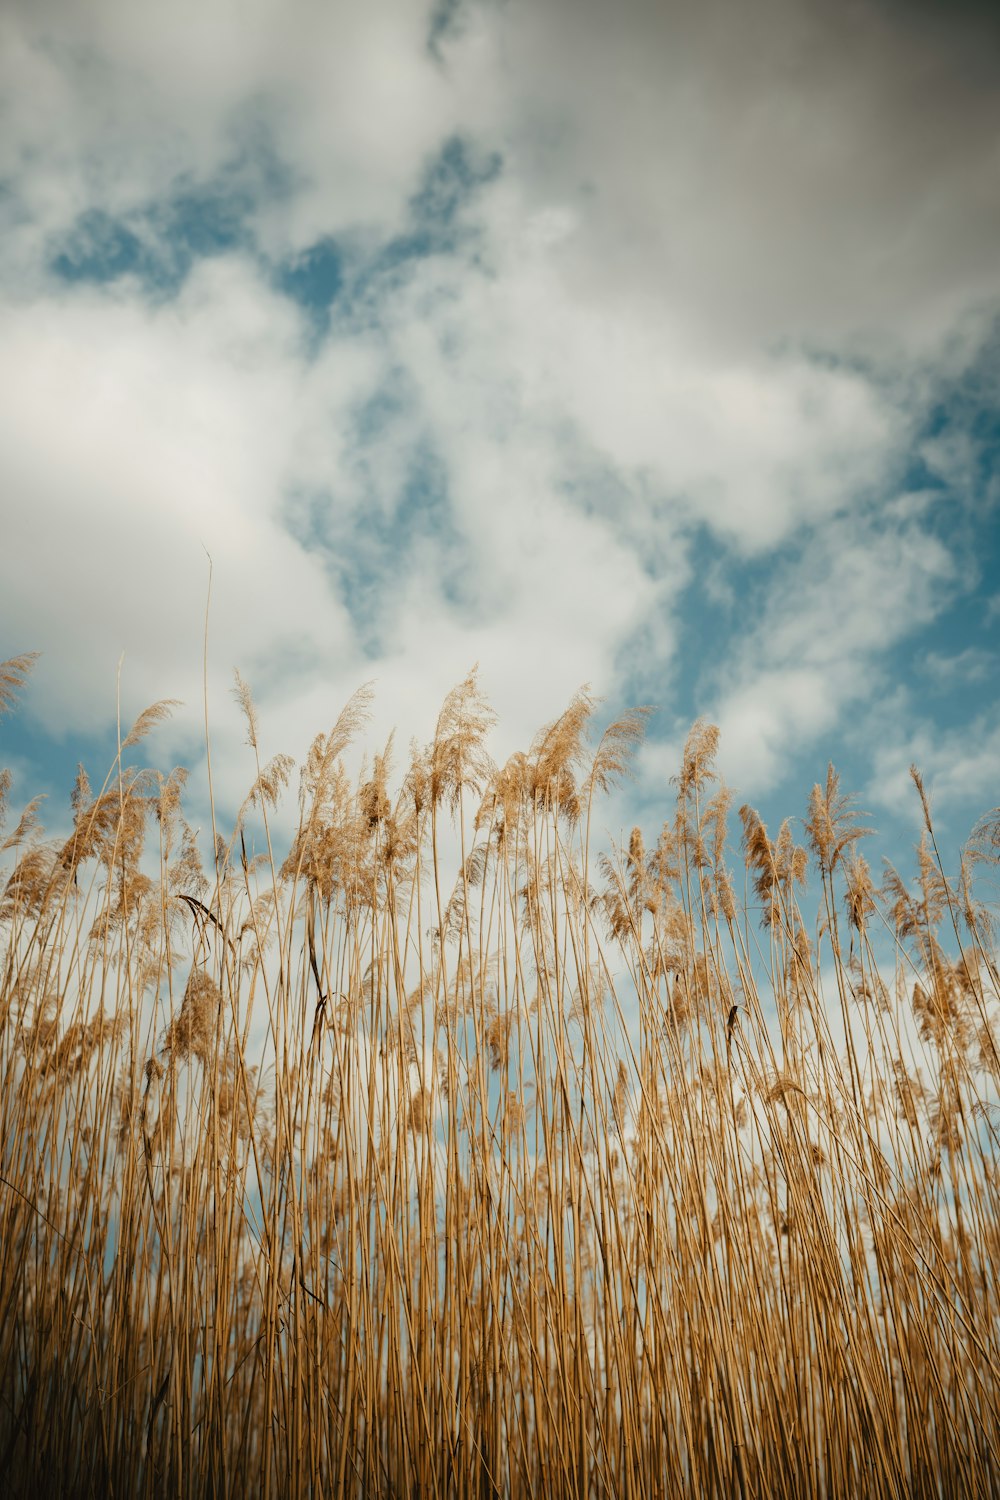 a field of tall grass under a cloudy blue sky